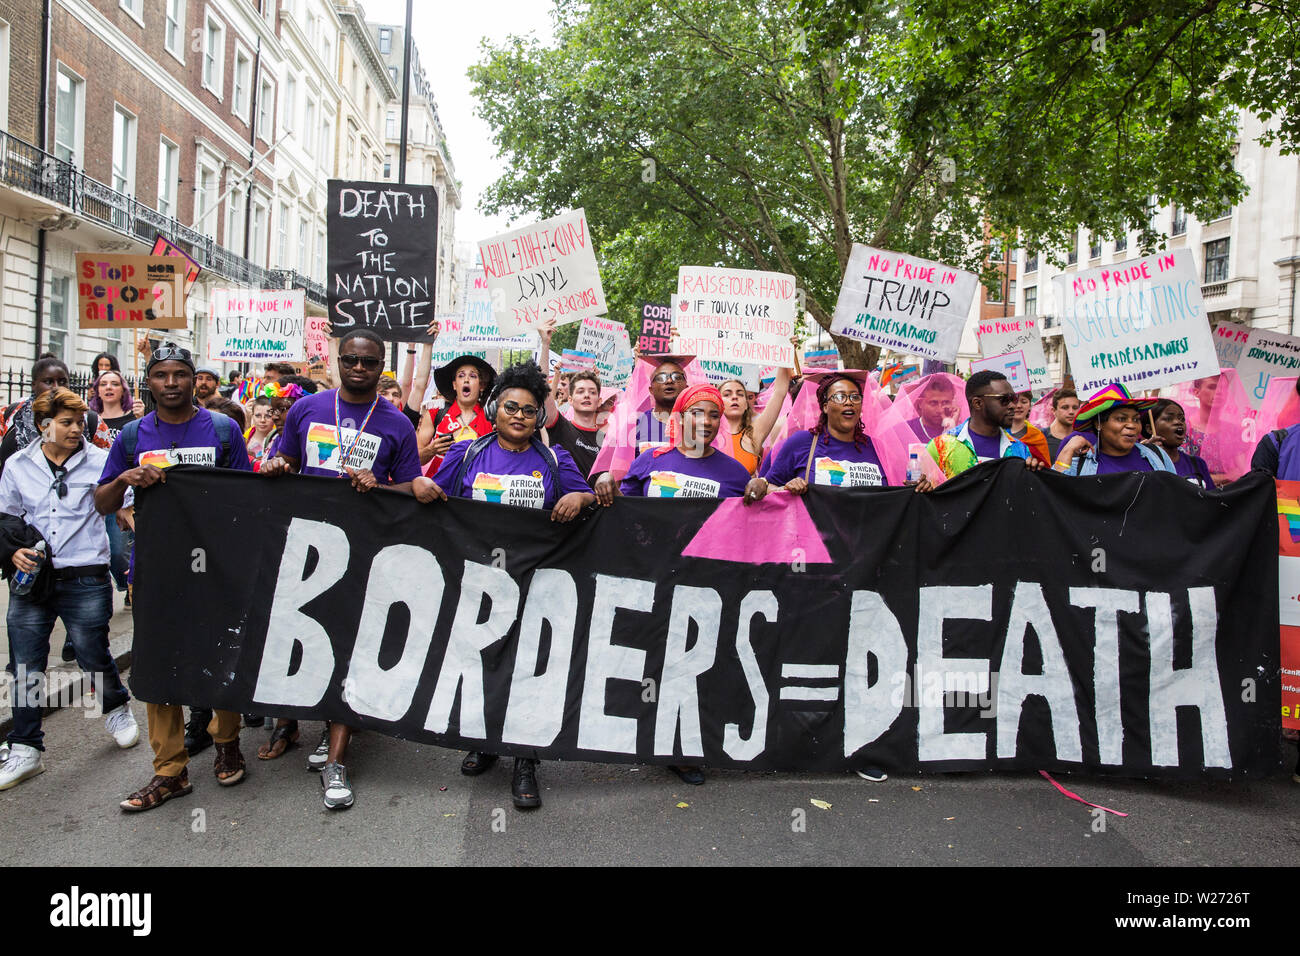 Londres, Royaume-Uni. 6 juillet, 2019. Des militants de Gays et Lesbiennes, soutenir les migrants, arc-en-ciel d'Afrique, l'extérieur de la famille, Projet Arc-en-ciel Micro et beaucoup d'autres groupes LGBT prendre part à une marche de solidarité Fierté de Londres à l'arrière de la fierté de Londres - stewards a essayé de les empêcher de se joindre à - en solidarité avec ceux pour qui la fierté de Londres est inaccessible et pour protester contre la corporatisation de fierté à Londres. Credit : Mark Kerrison/Alamy Live News Banque D'Images